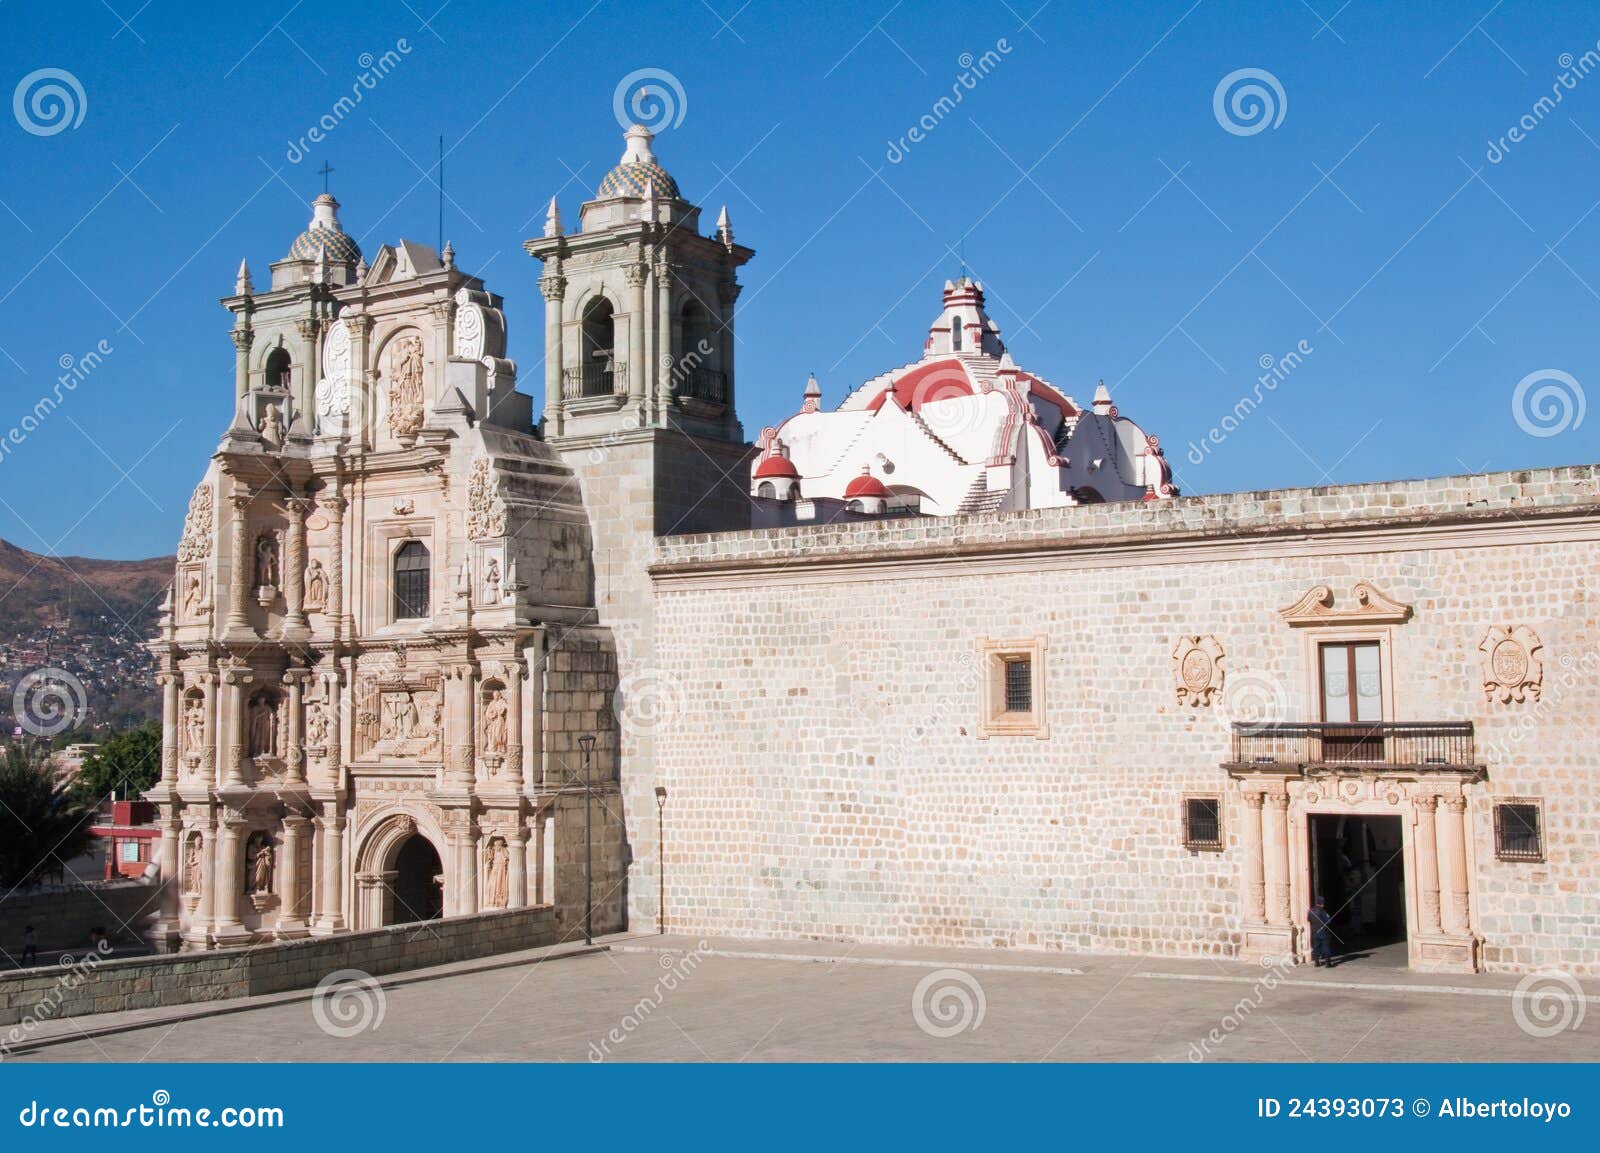 church of la soledad, oaxaca (mexico)